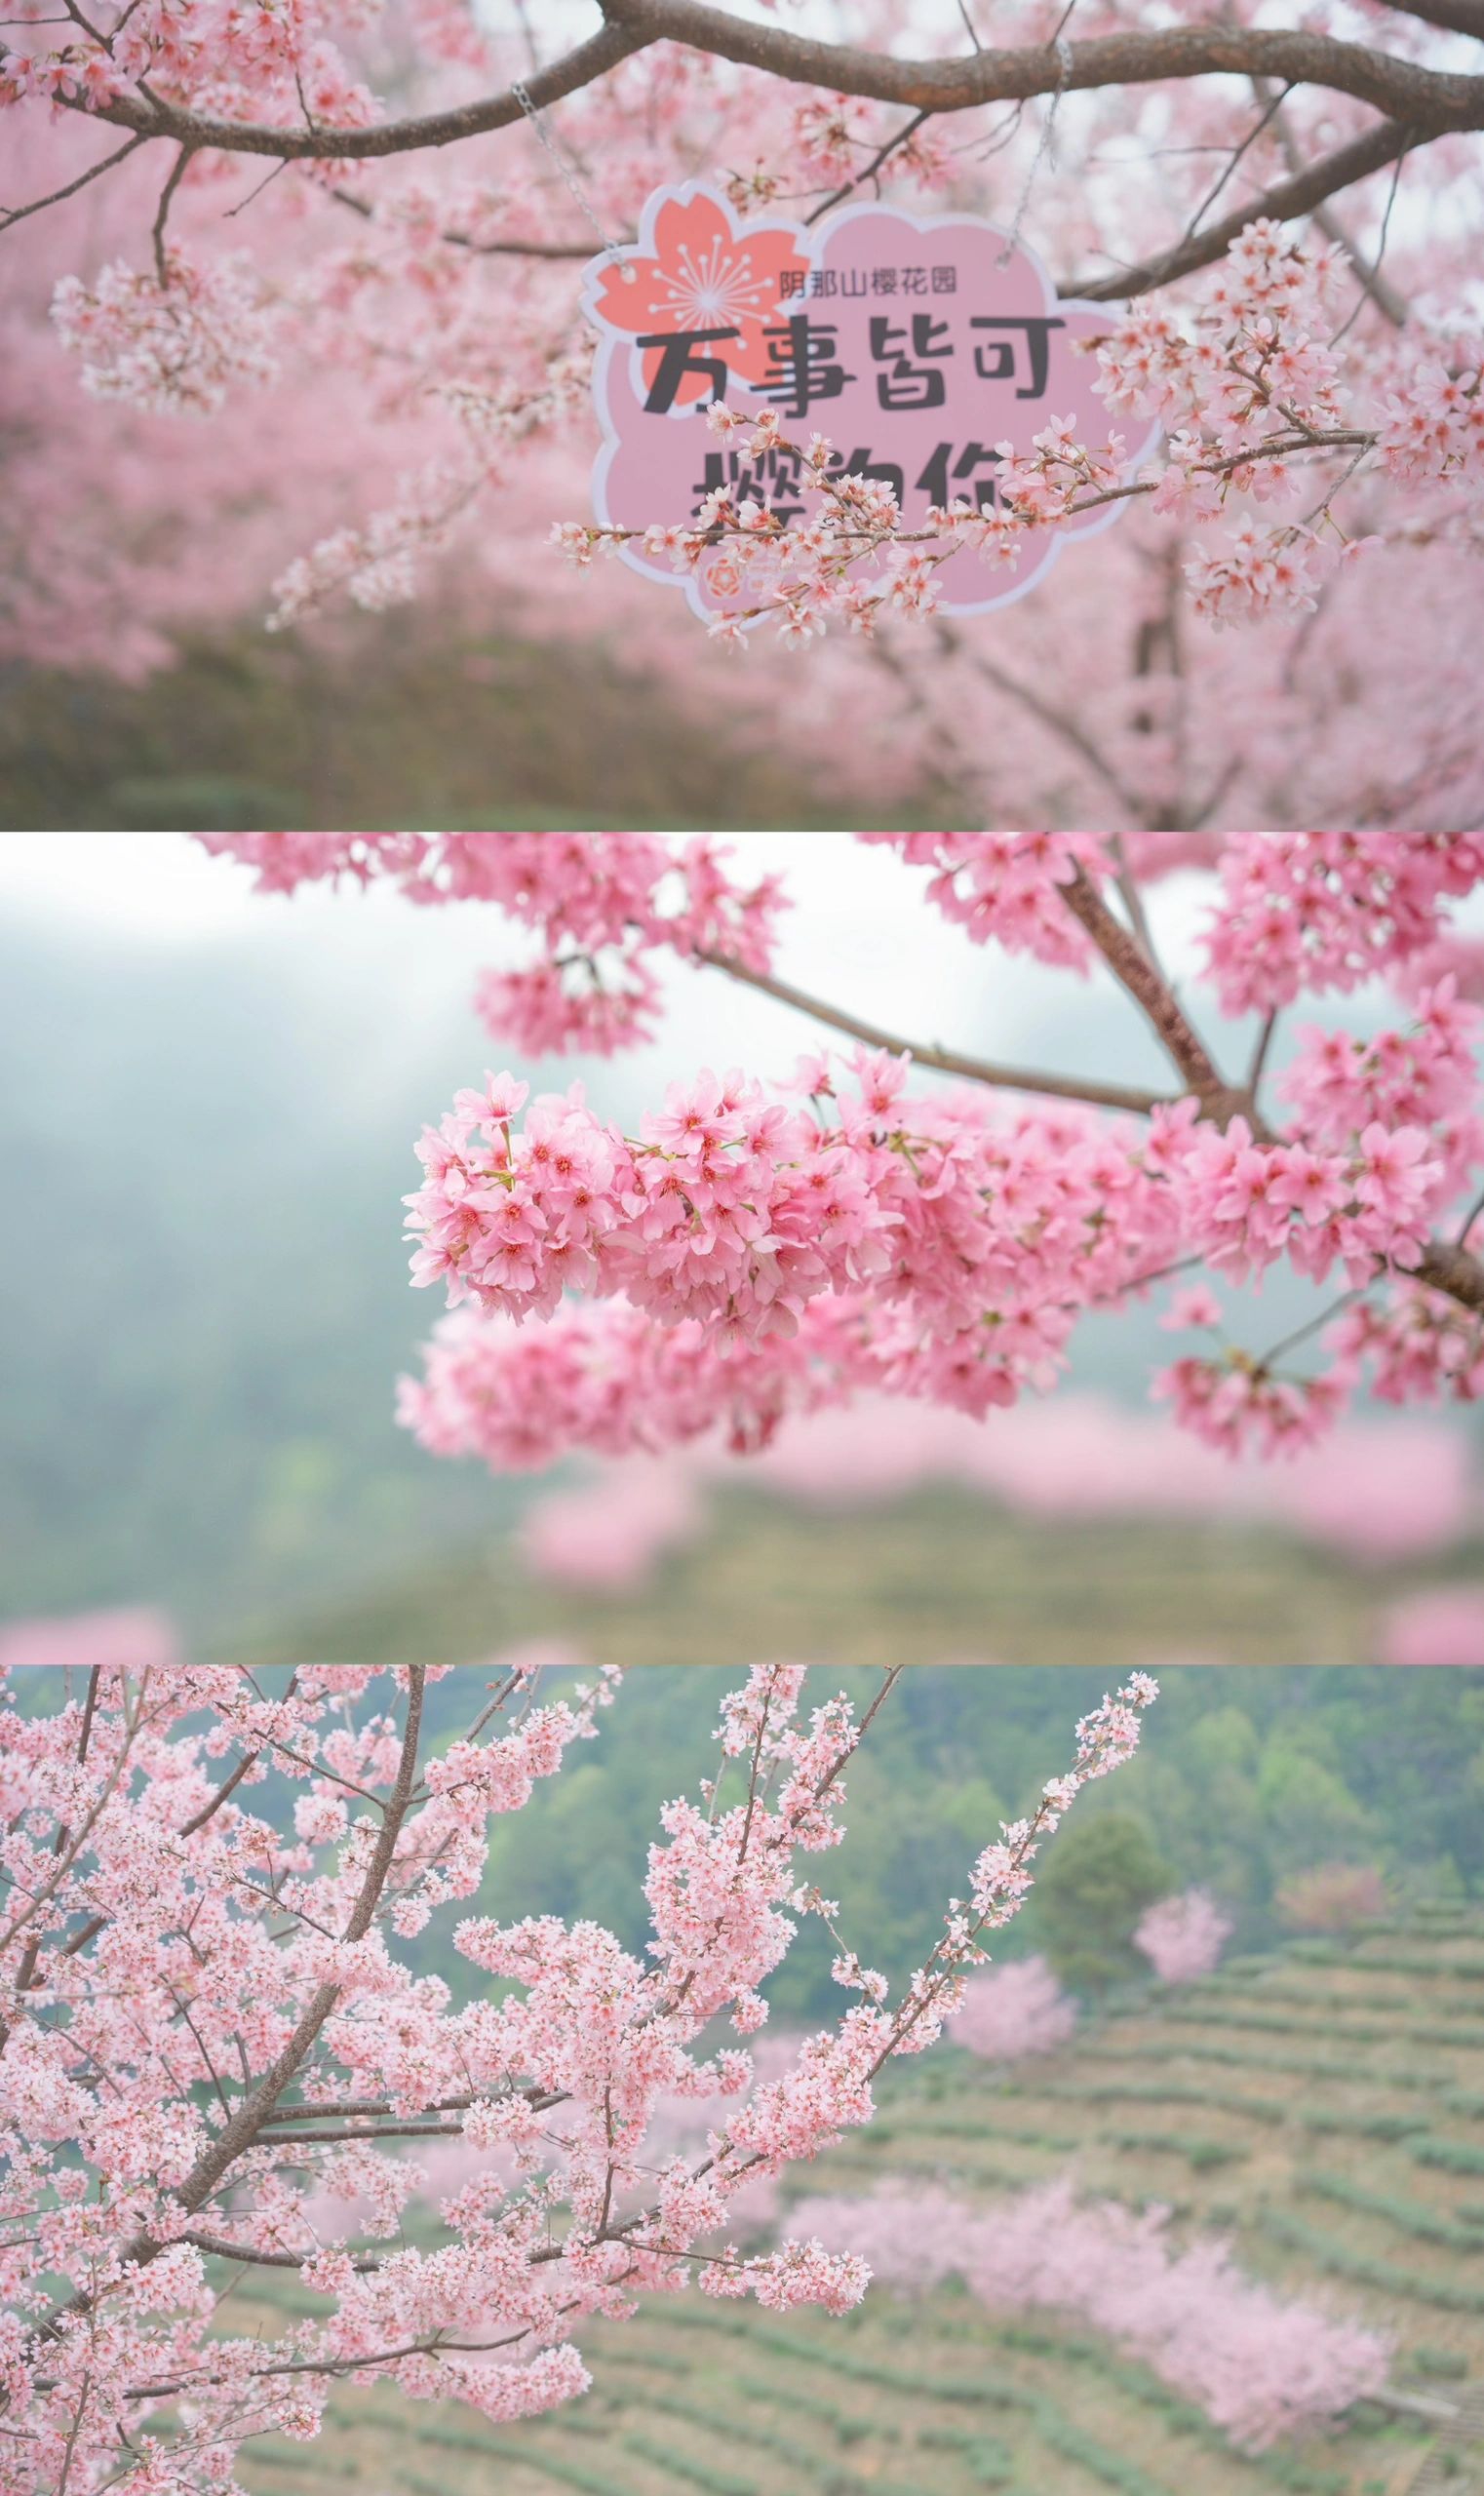 潮汕周边二三月樱花||梅州阴那山灵光寺